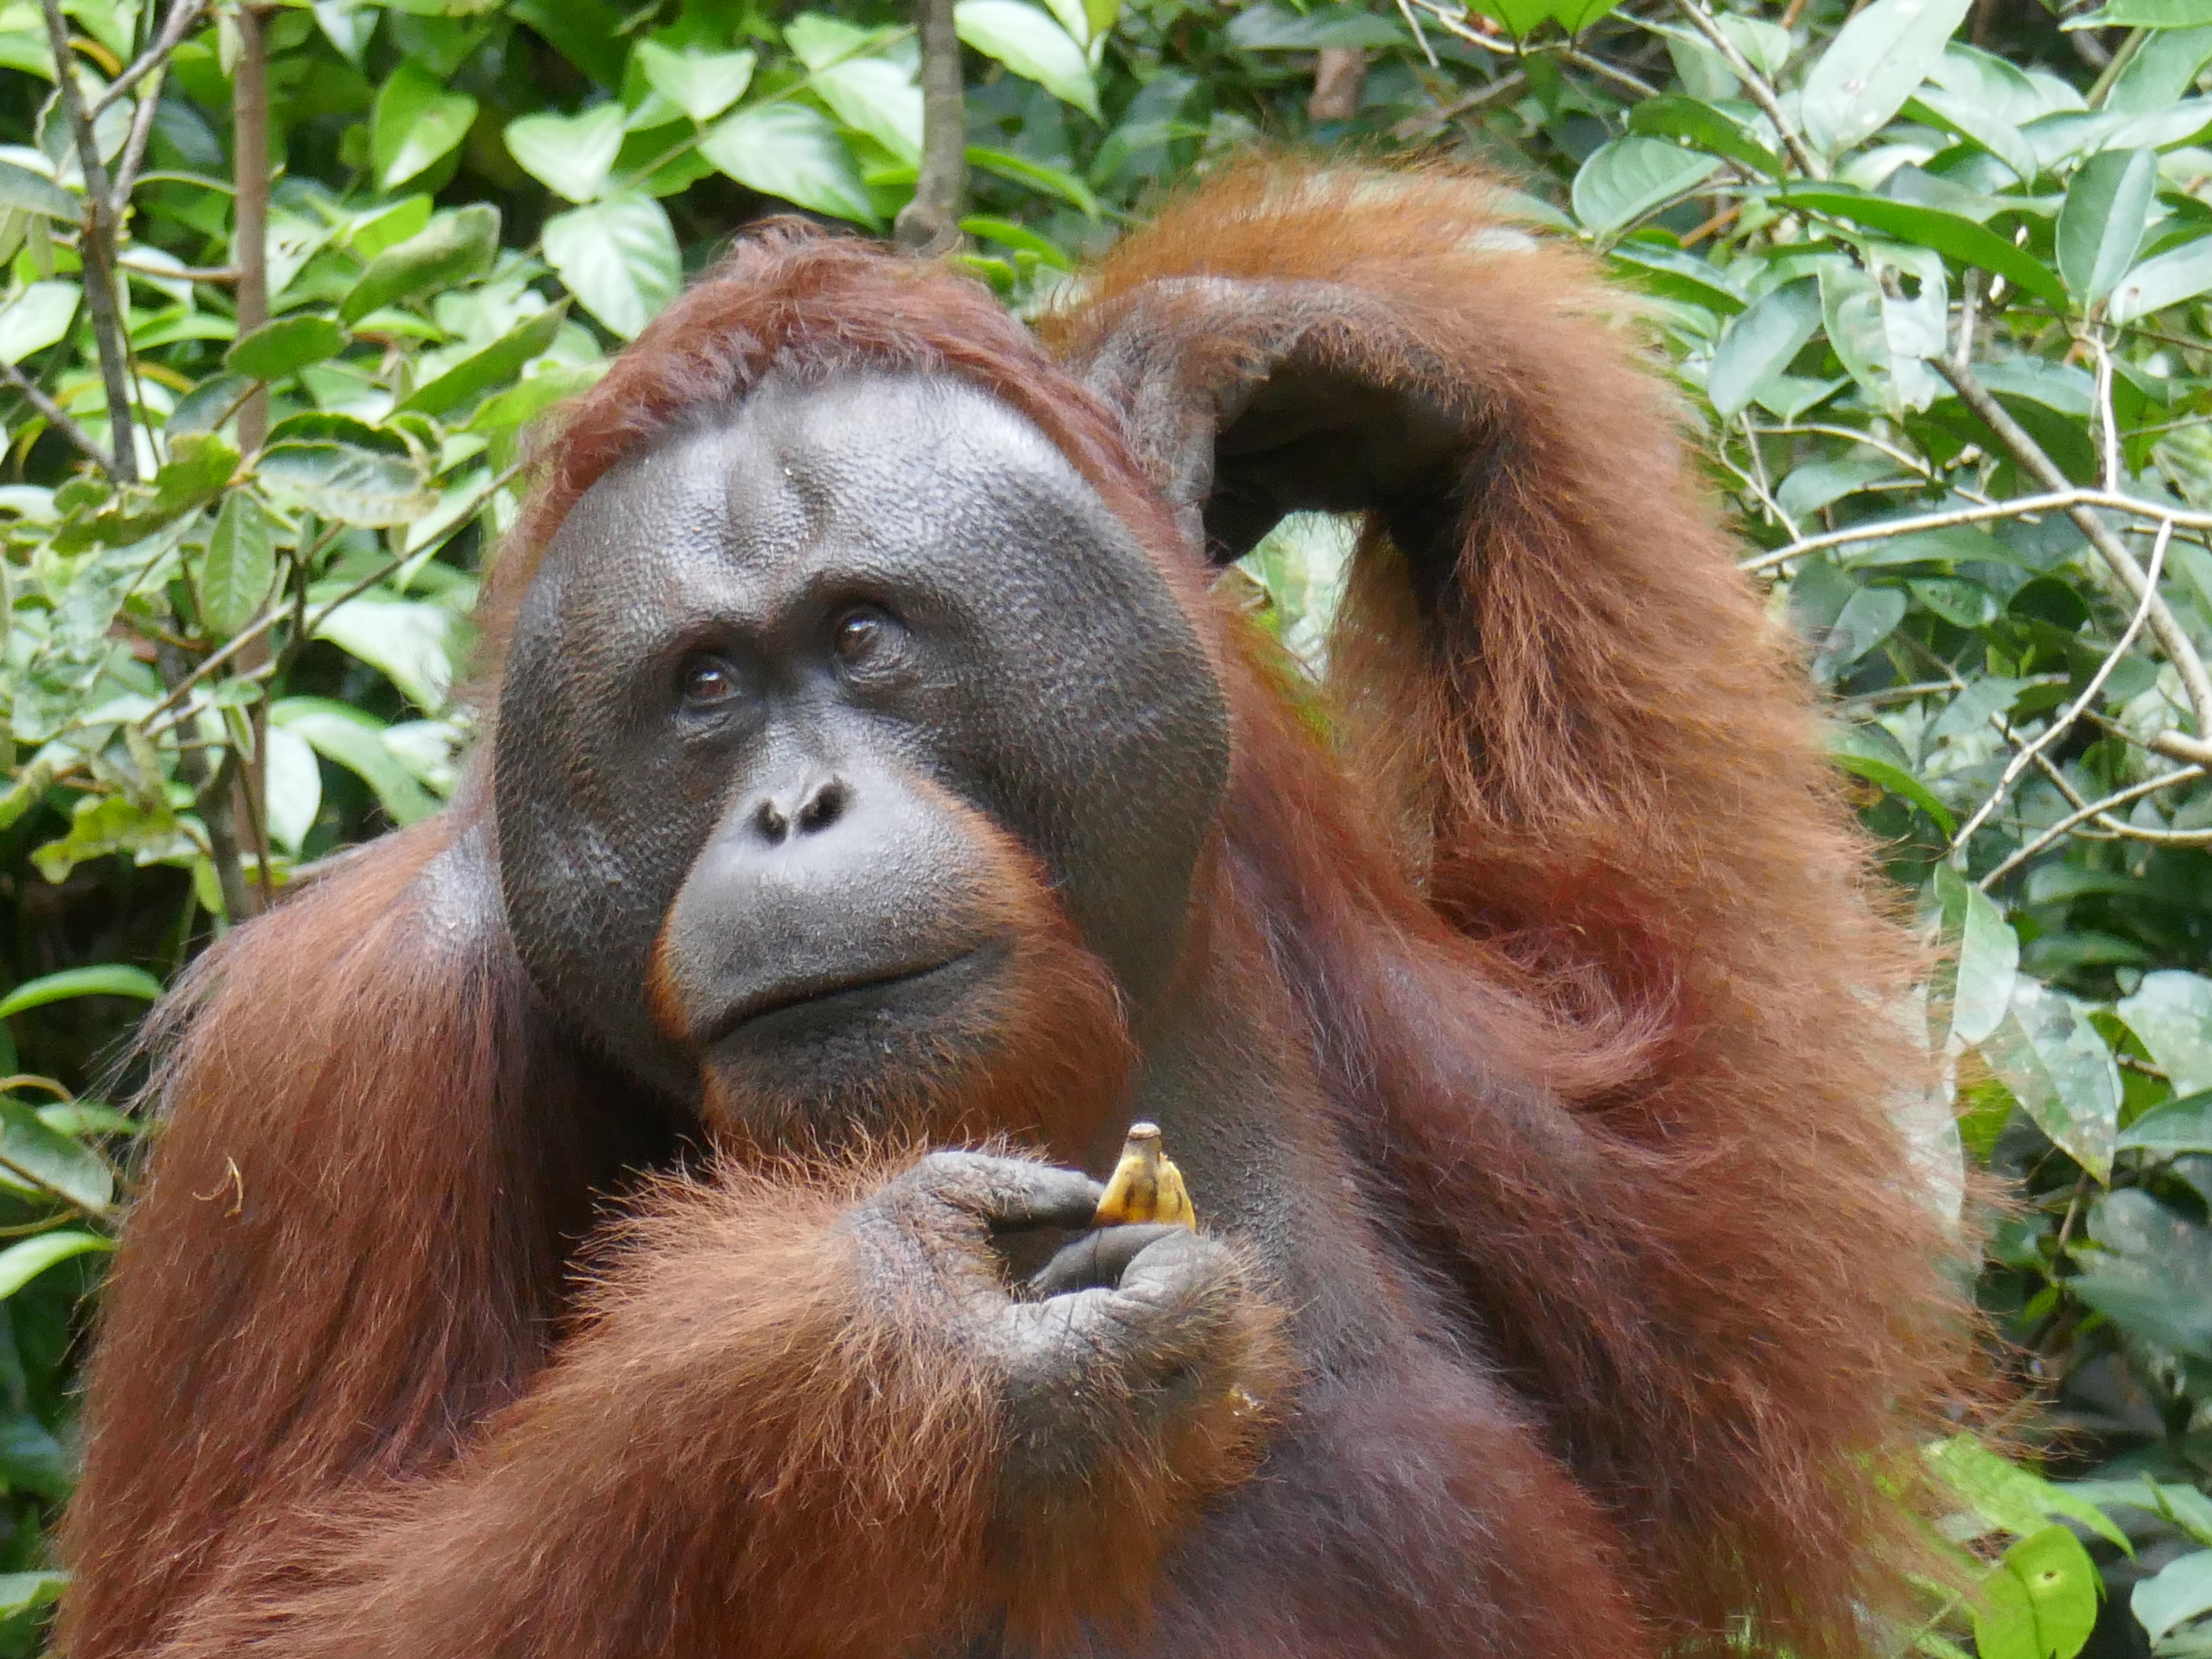 Les orangs-outans mâles sont dotés de disques faciaux. Celui-ci s'est imposé pendant plusieurs minutes pour déguster une bonne quantité des bananes offertes par les gardes-parc.